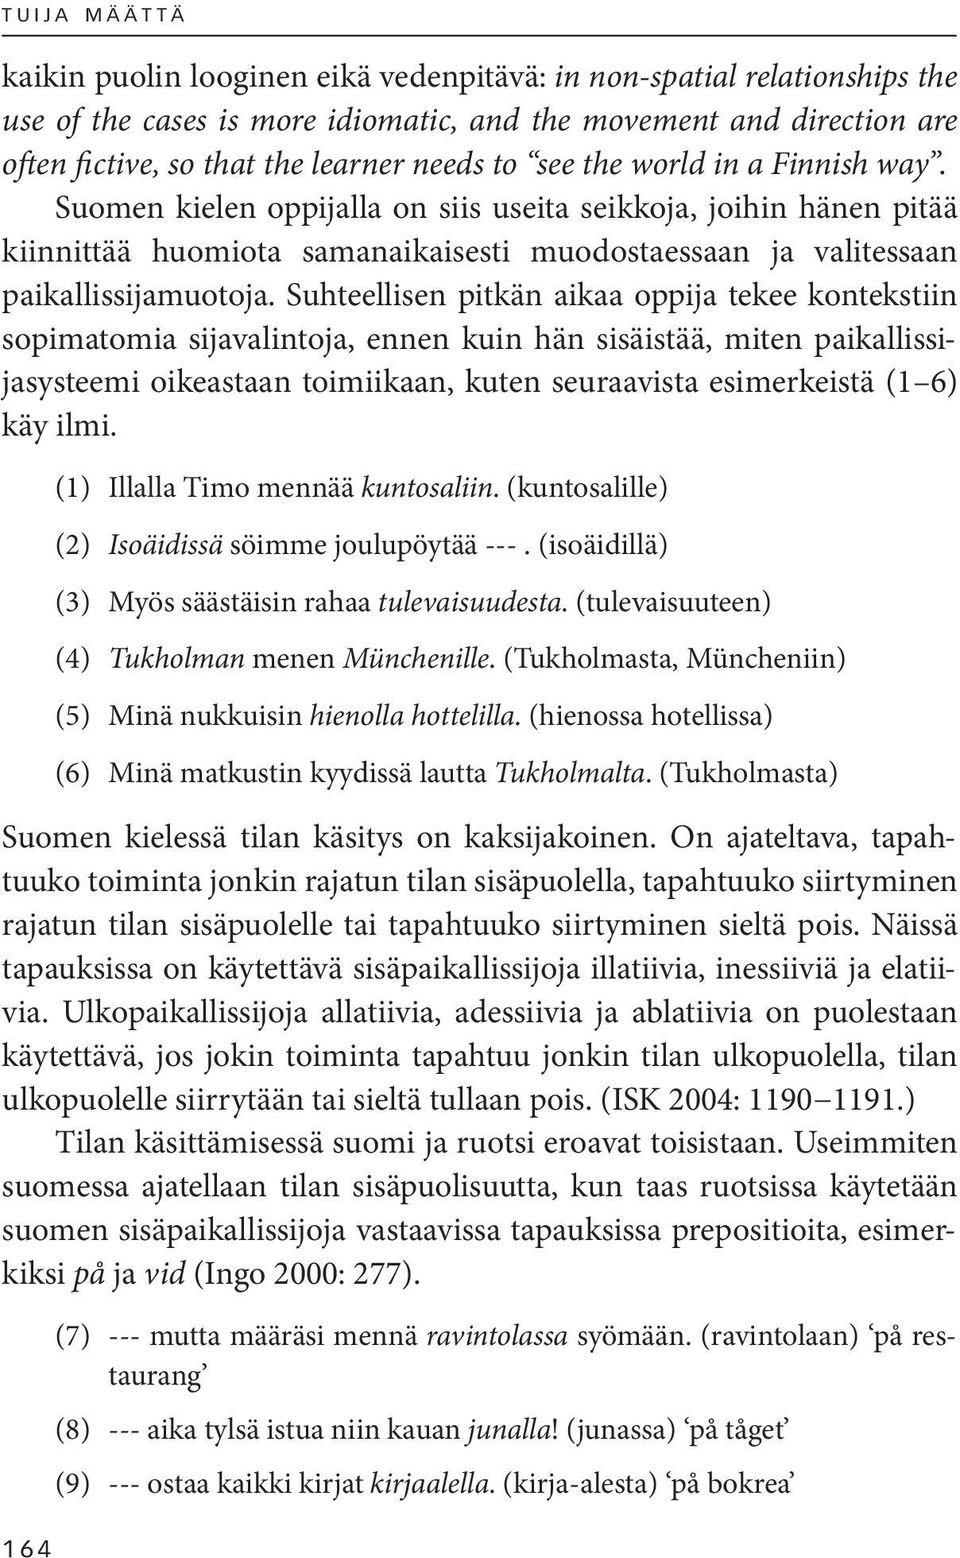 Suomen kielen oppijalla on siis useita seikkoja, joihin hänen pitää kiinnittää huomiota samanaikaisesti muodostaessaan ja valitessaan paikallissijamuotoja.